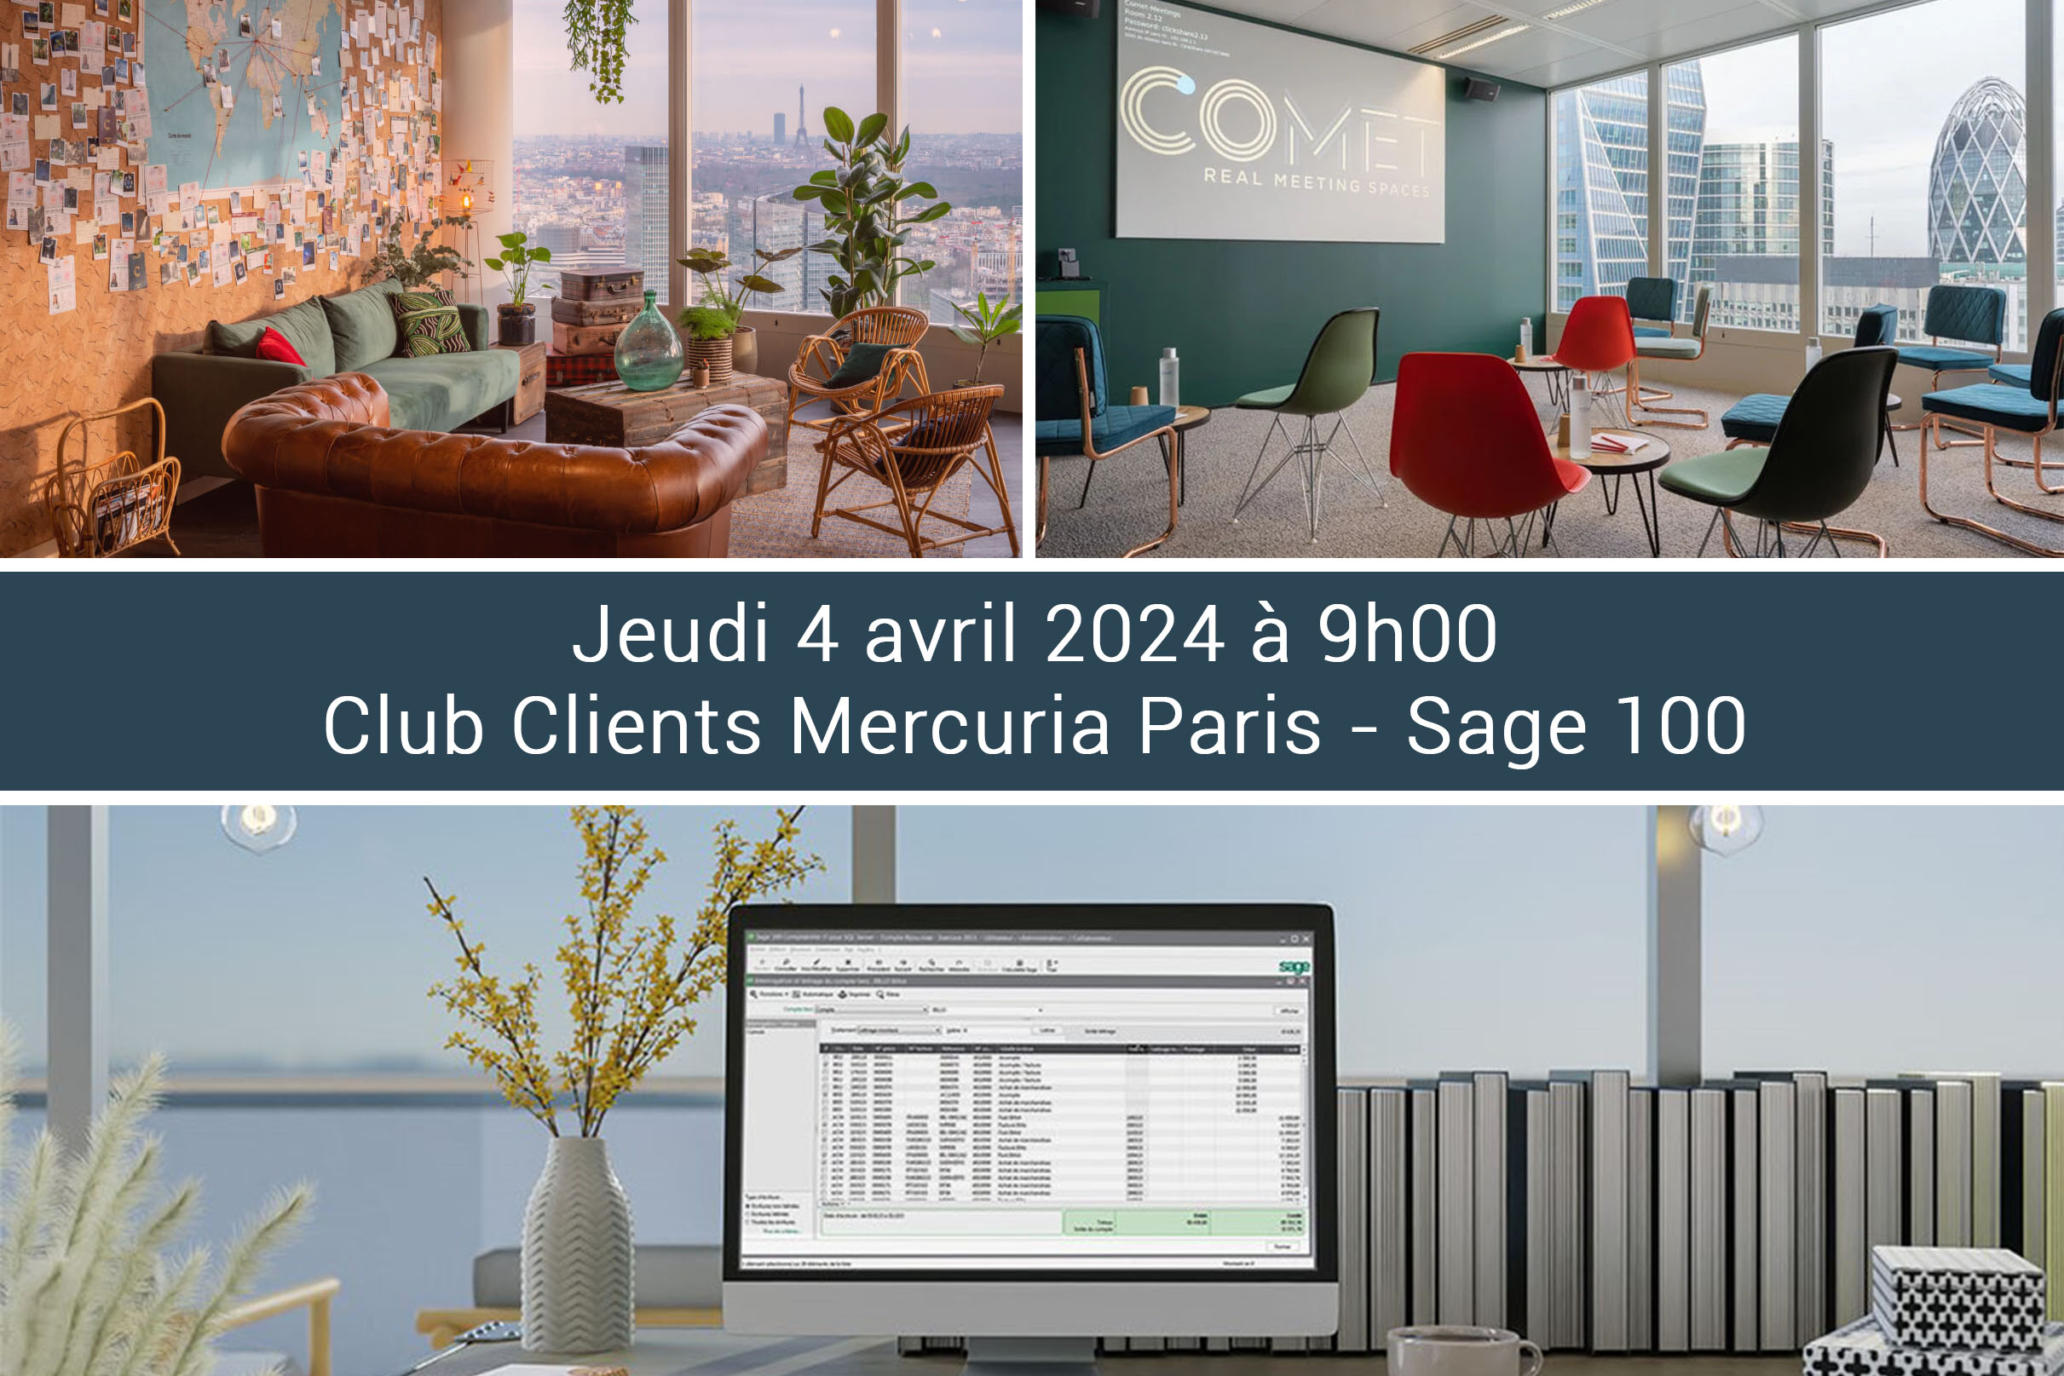 Mercuria_Club Clients Sage 100_COMET Paris_Avril 24